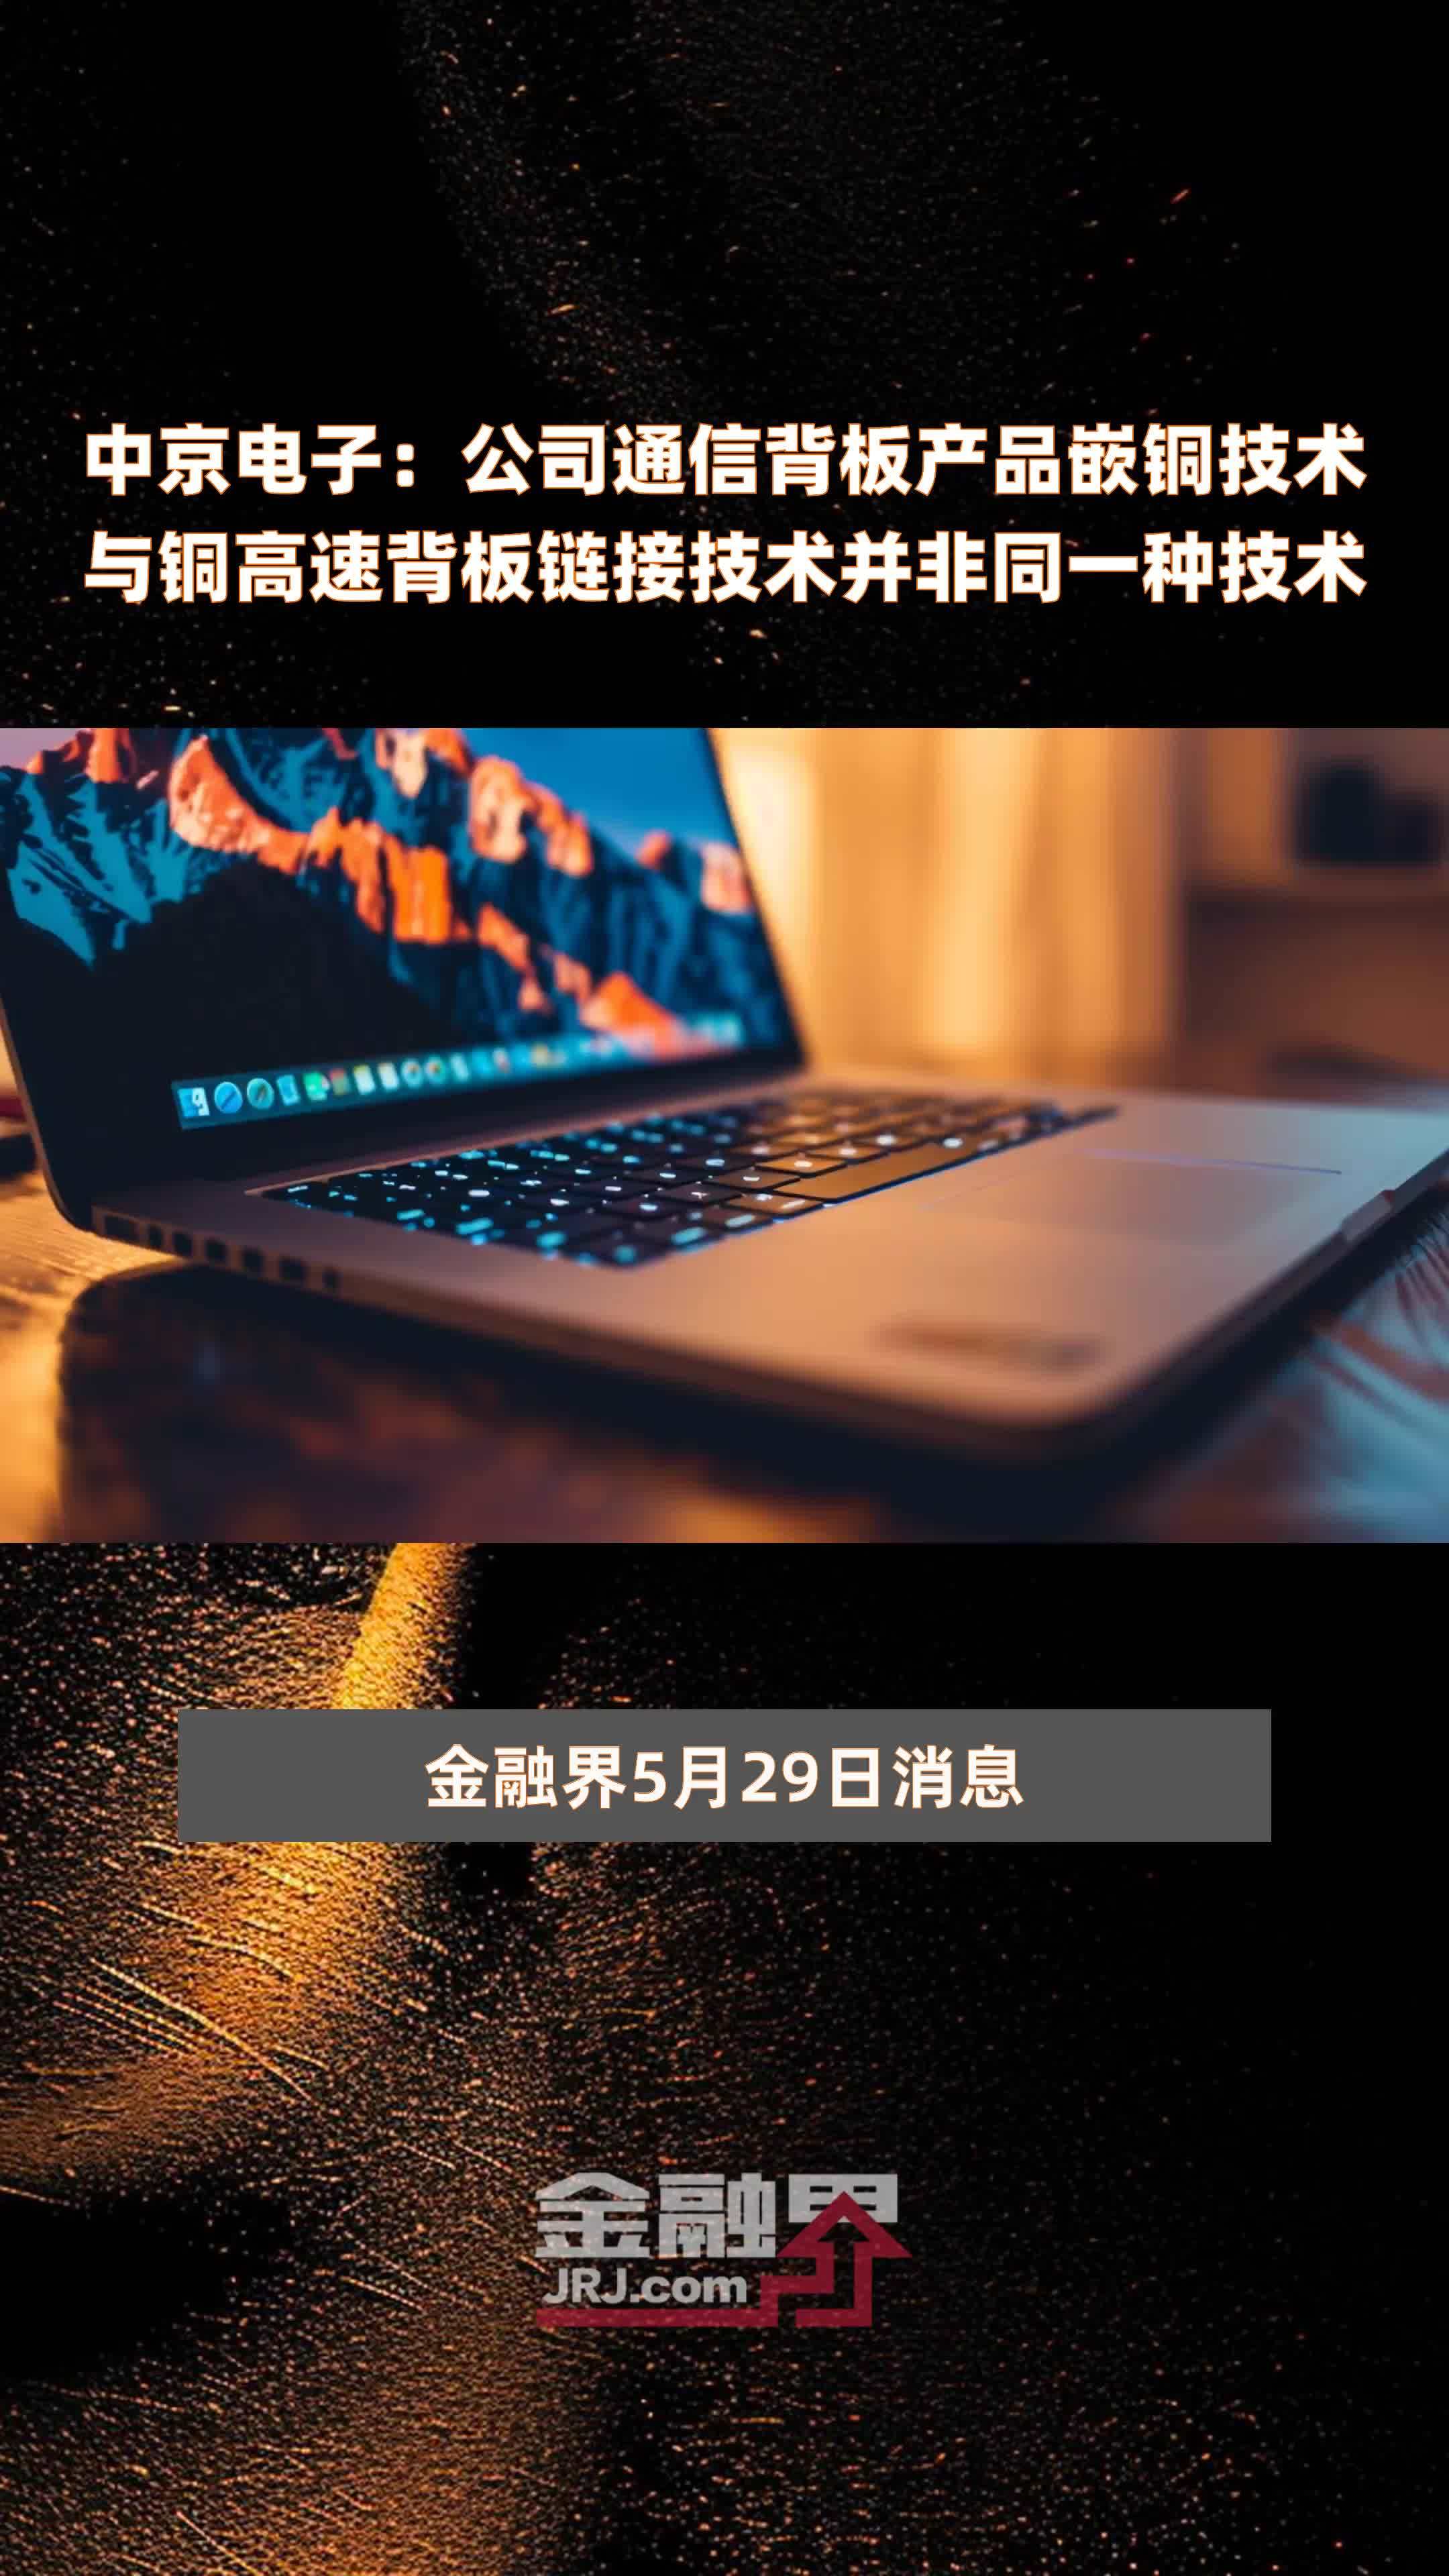 中京电子公司通信背板产品嵌铜技术与铜高速背板链接技术并非同一种